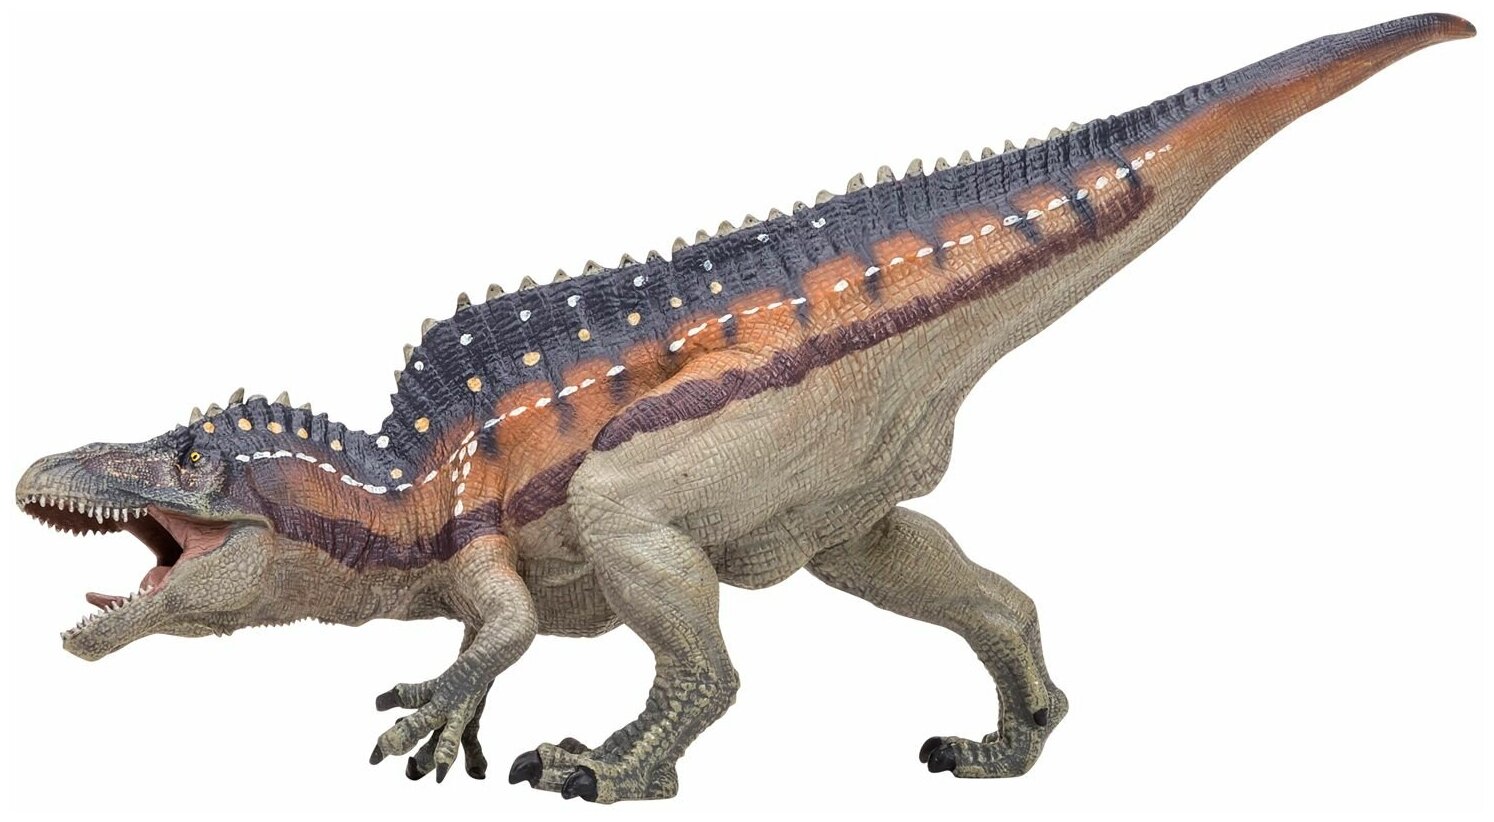 Игрушка динозавр серии "Мир динозавров" Акрокантозавр, фигурка длиной 30 см